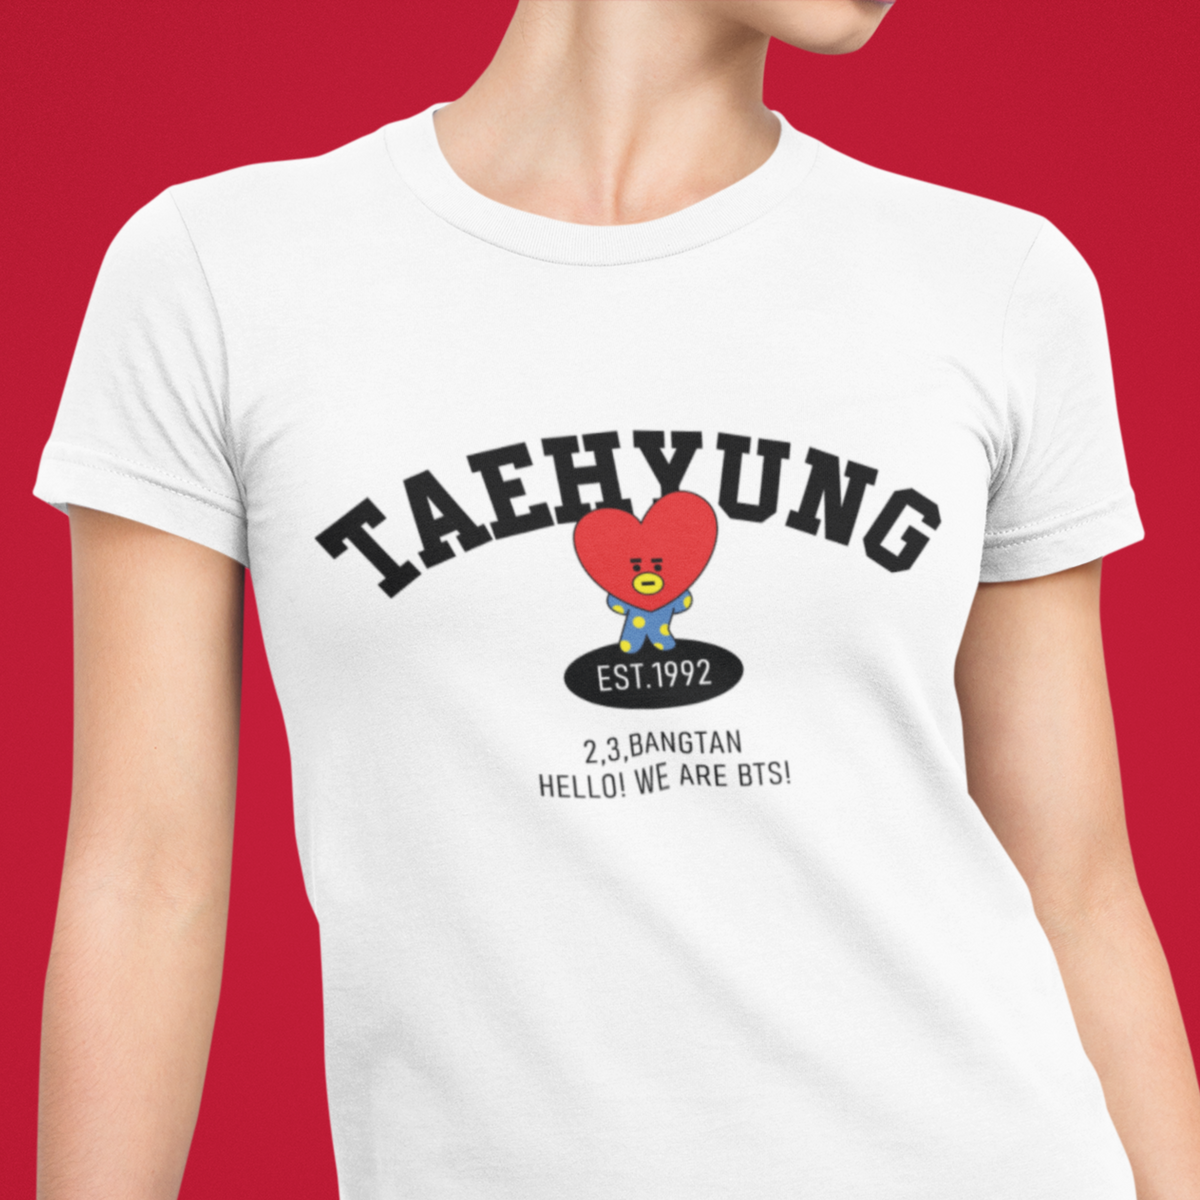 Nome do produto: Camiseta Taehyung - TATA